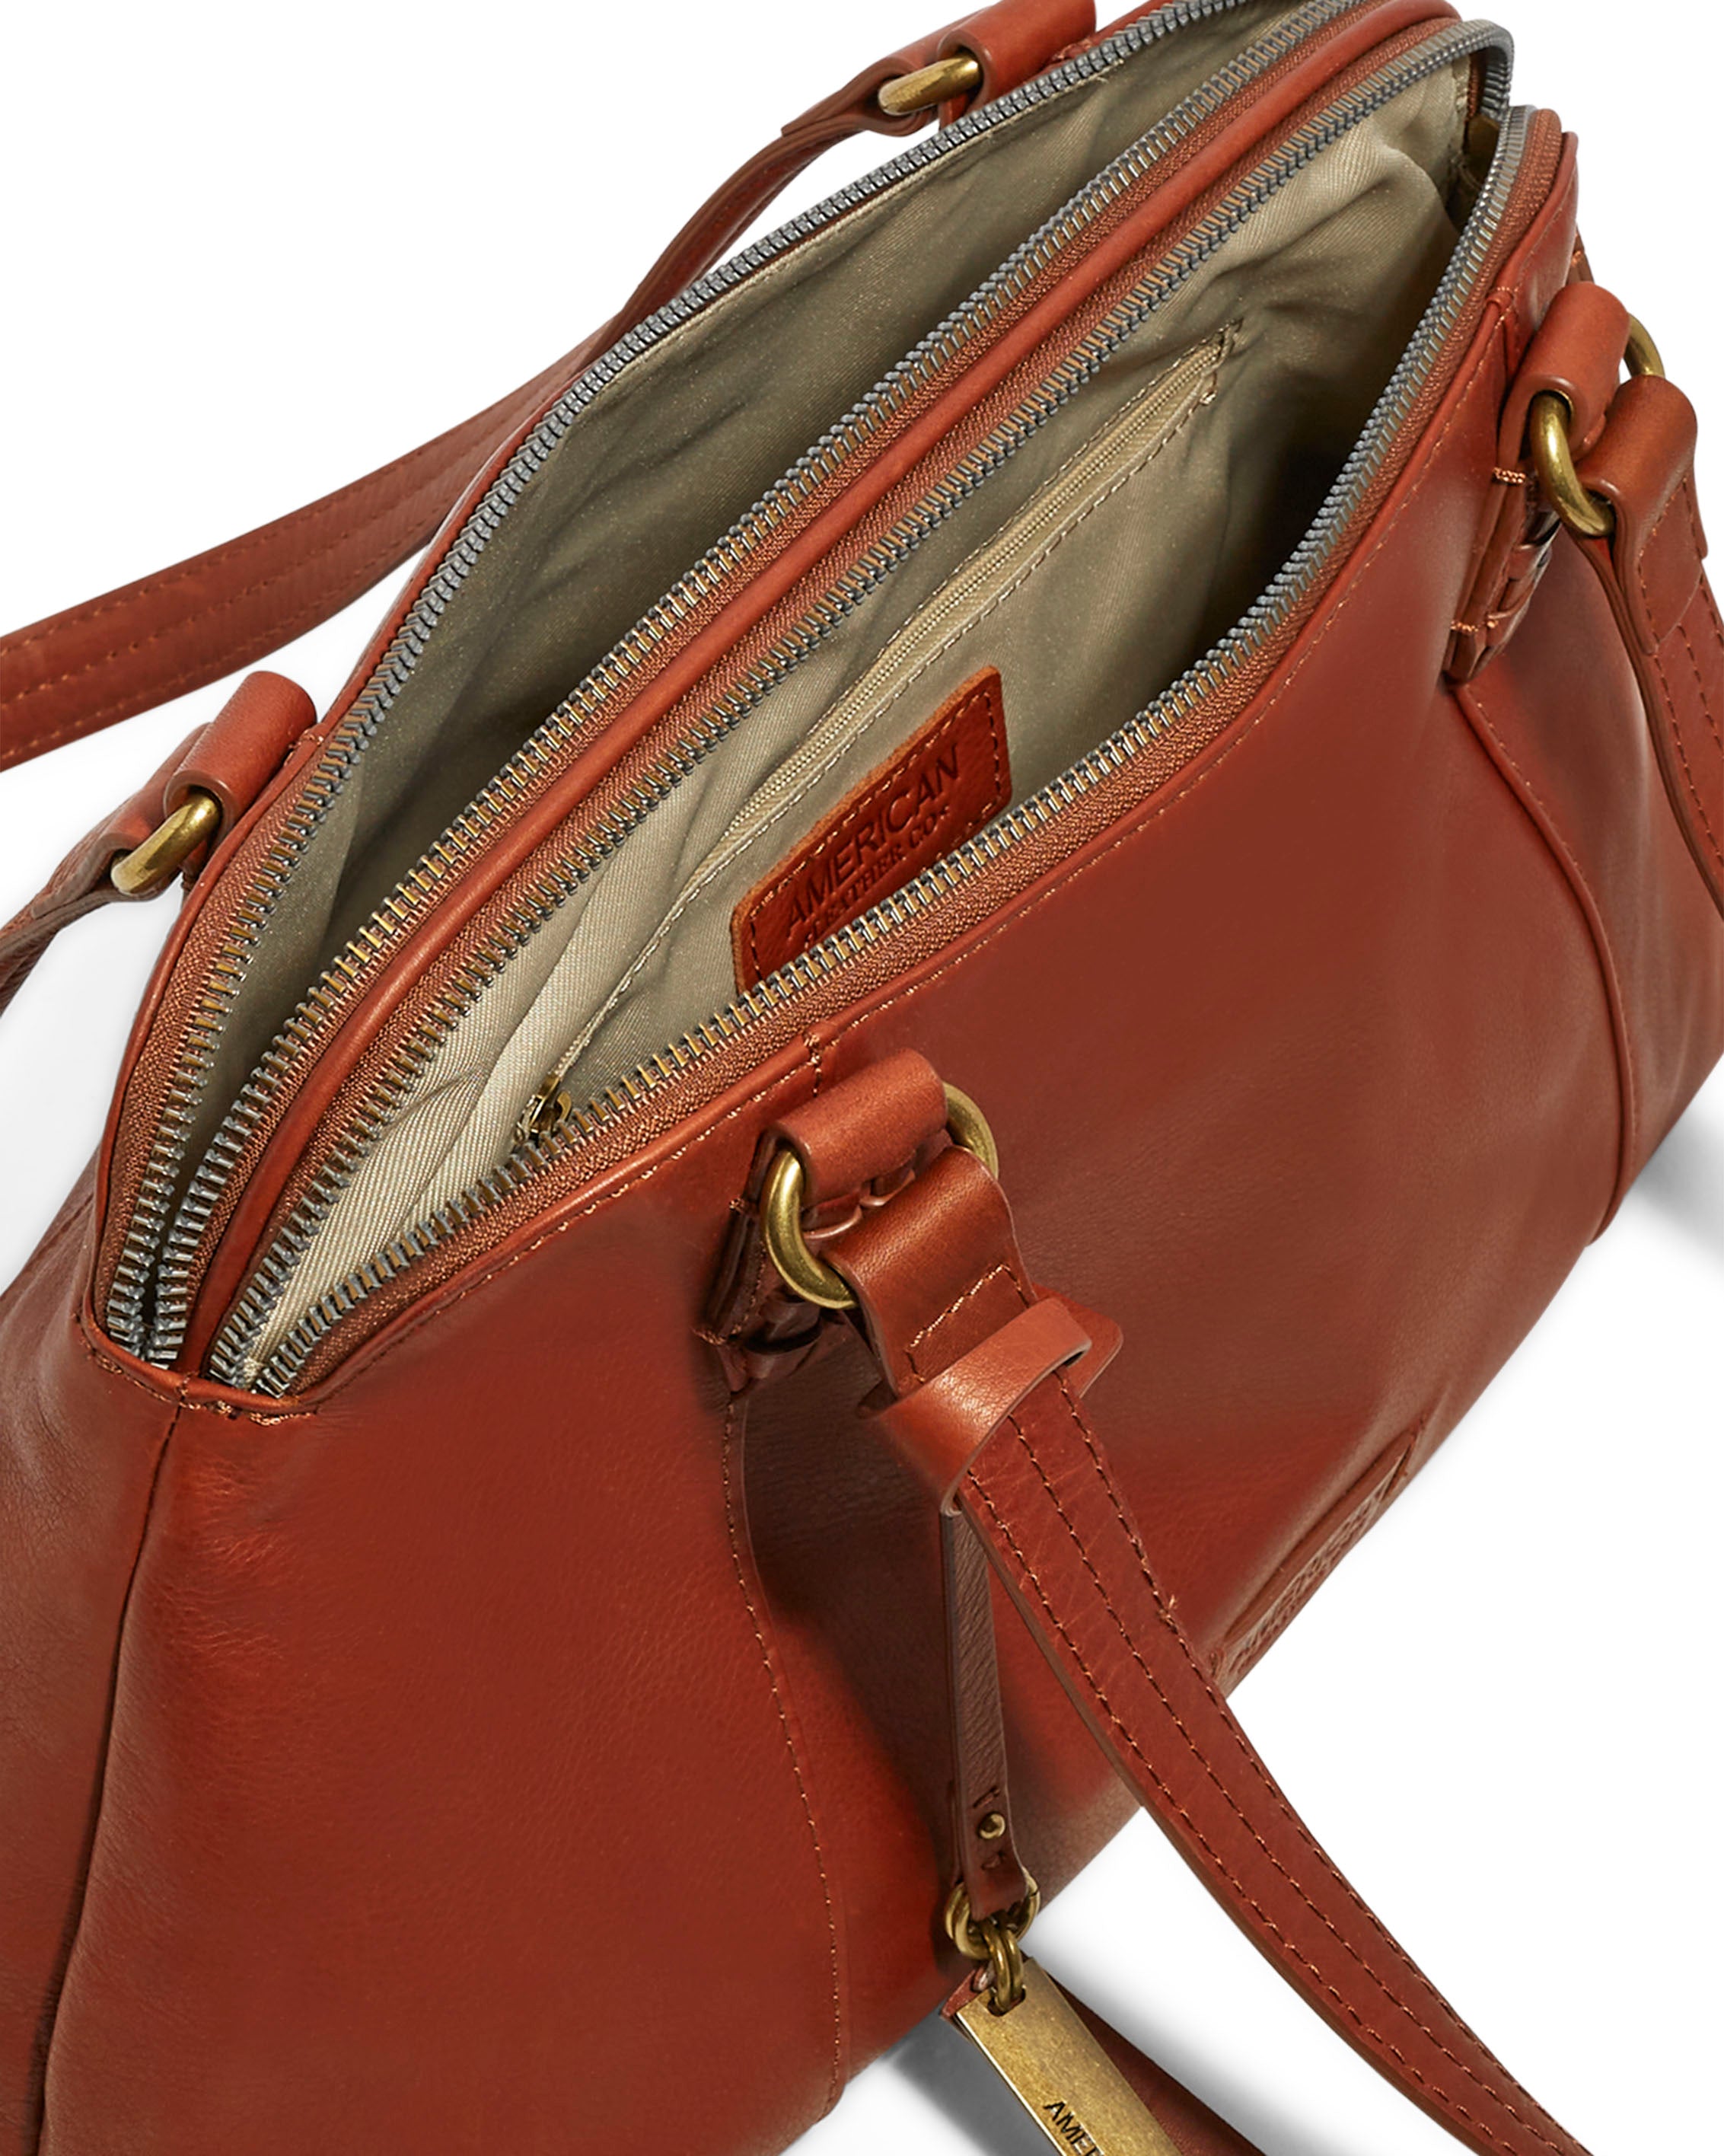 Poppy Women's Top Handle Satchel Handbag Tote Bag with Wallet 